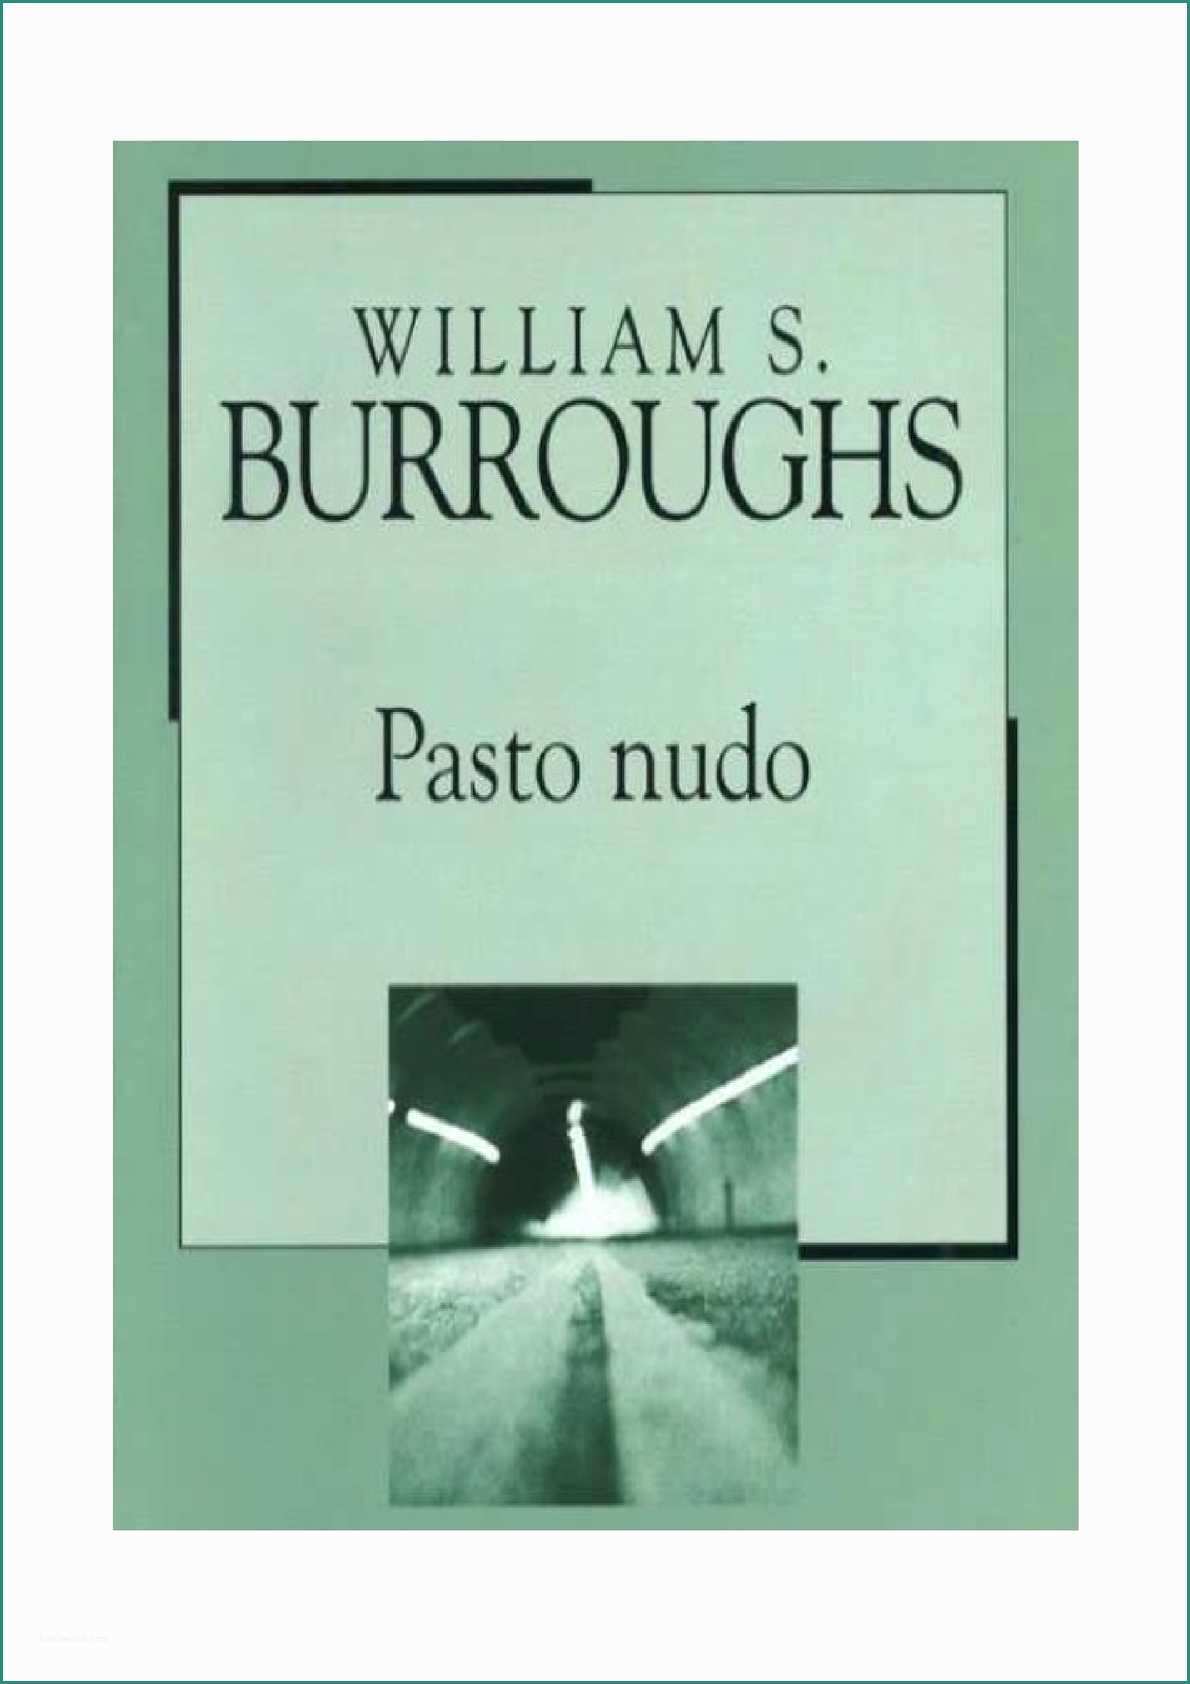 Poltrona Frau Spaccio E Calaméo William S Burroughs Il Pasto Nudo